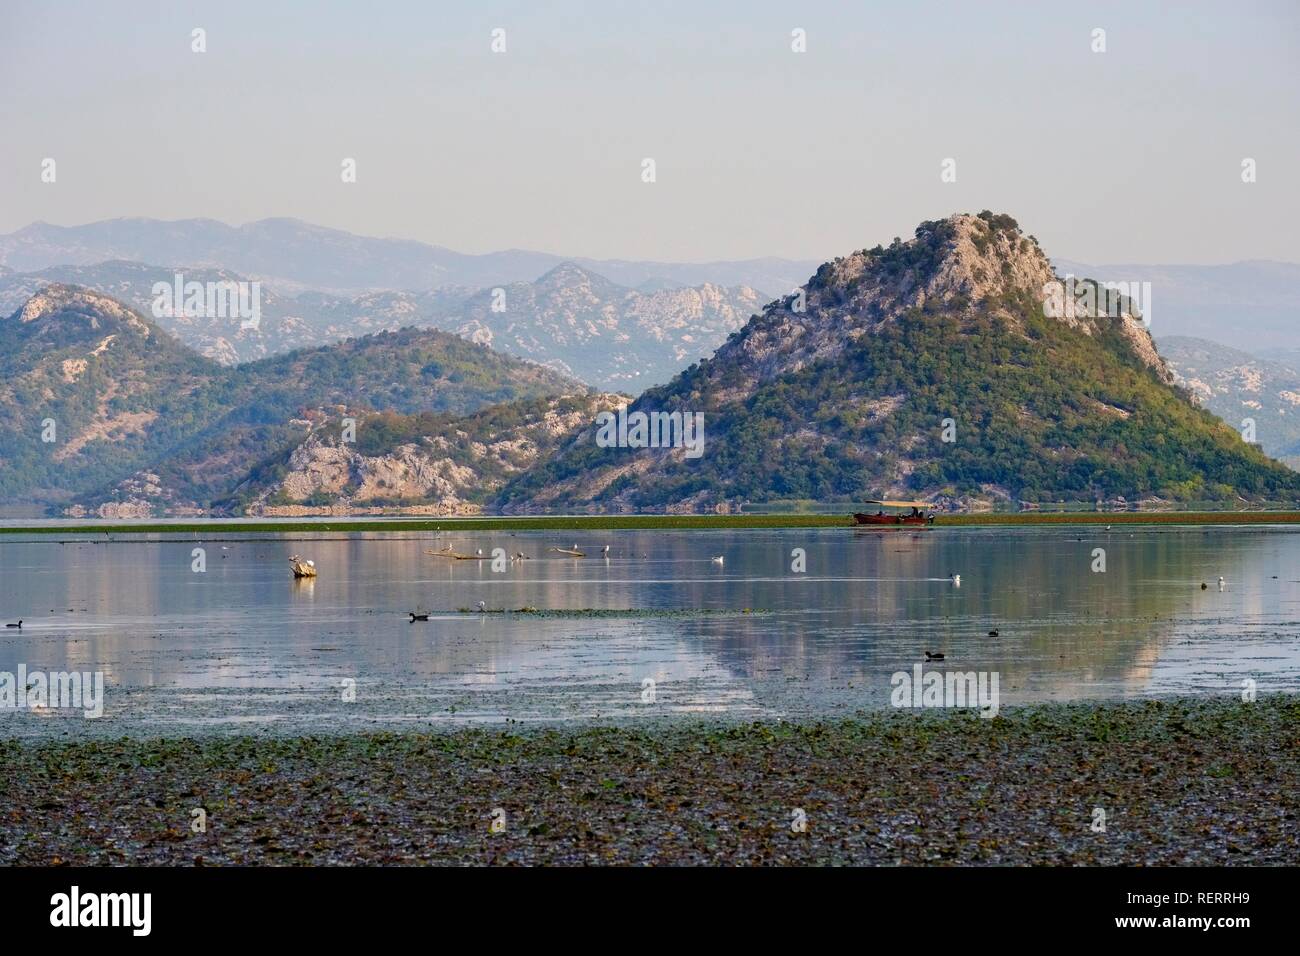 Bateau d'excursion sur le lac de Skadar, près de l'estuaire de Moraca, le parc national du lac de Skadar, Province de Podgorica, Monténégro Banque D'Images